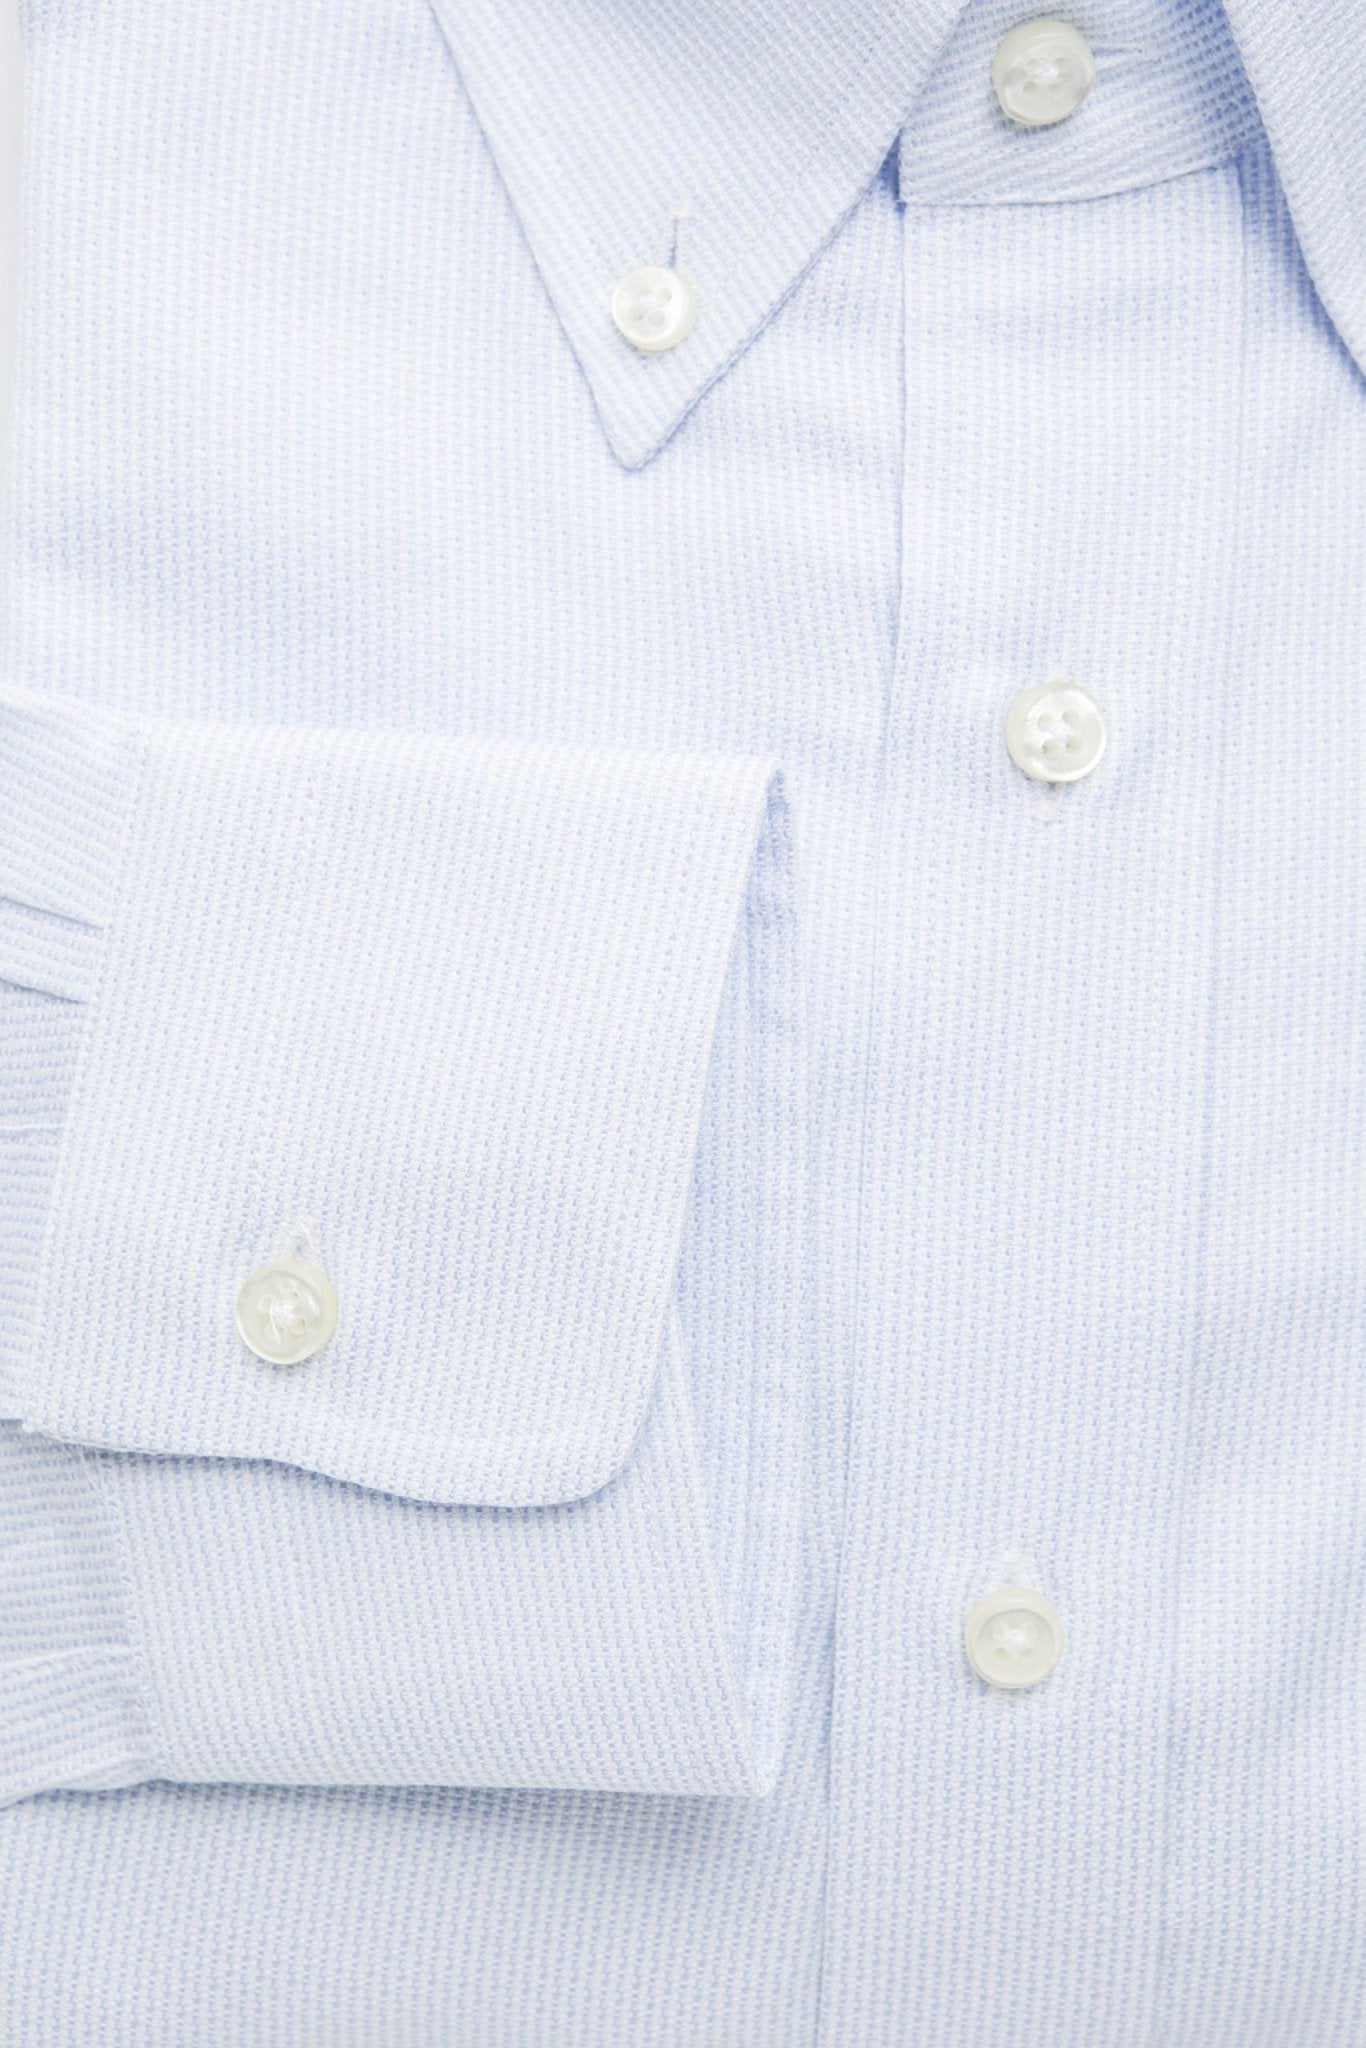 Robert Friedman Light-blue Cotton Shirt - Fizigo